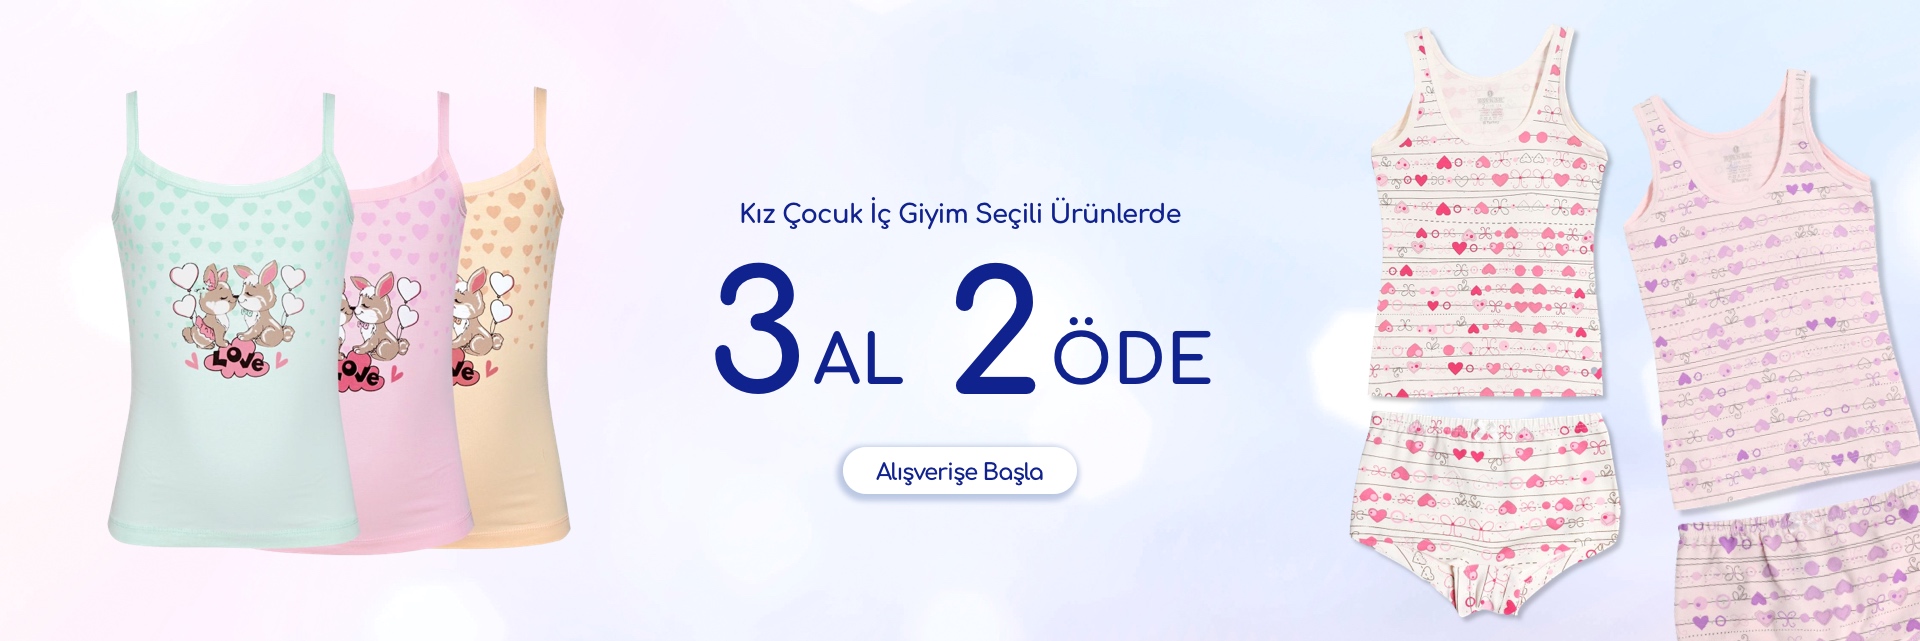 3al2ode-kizcocukicgiyim